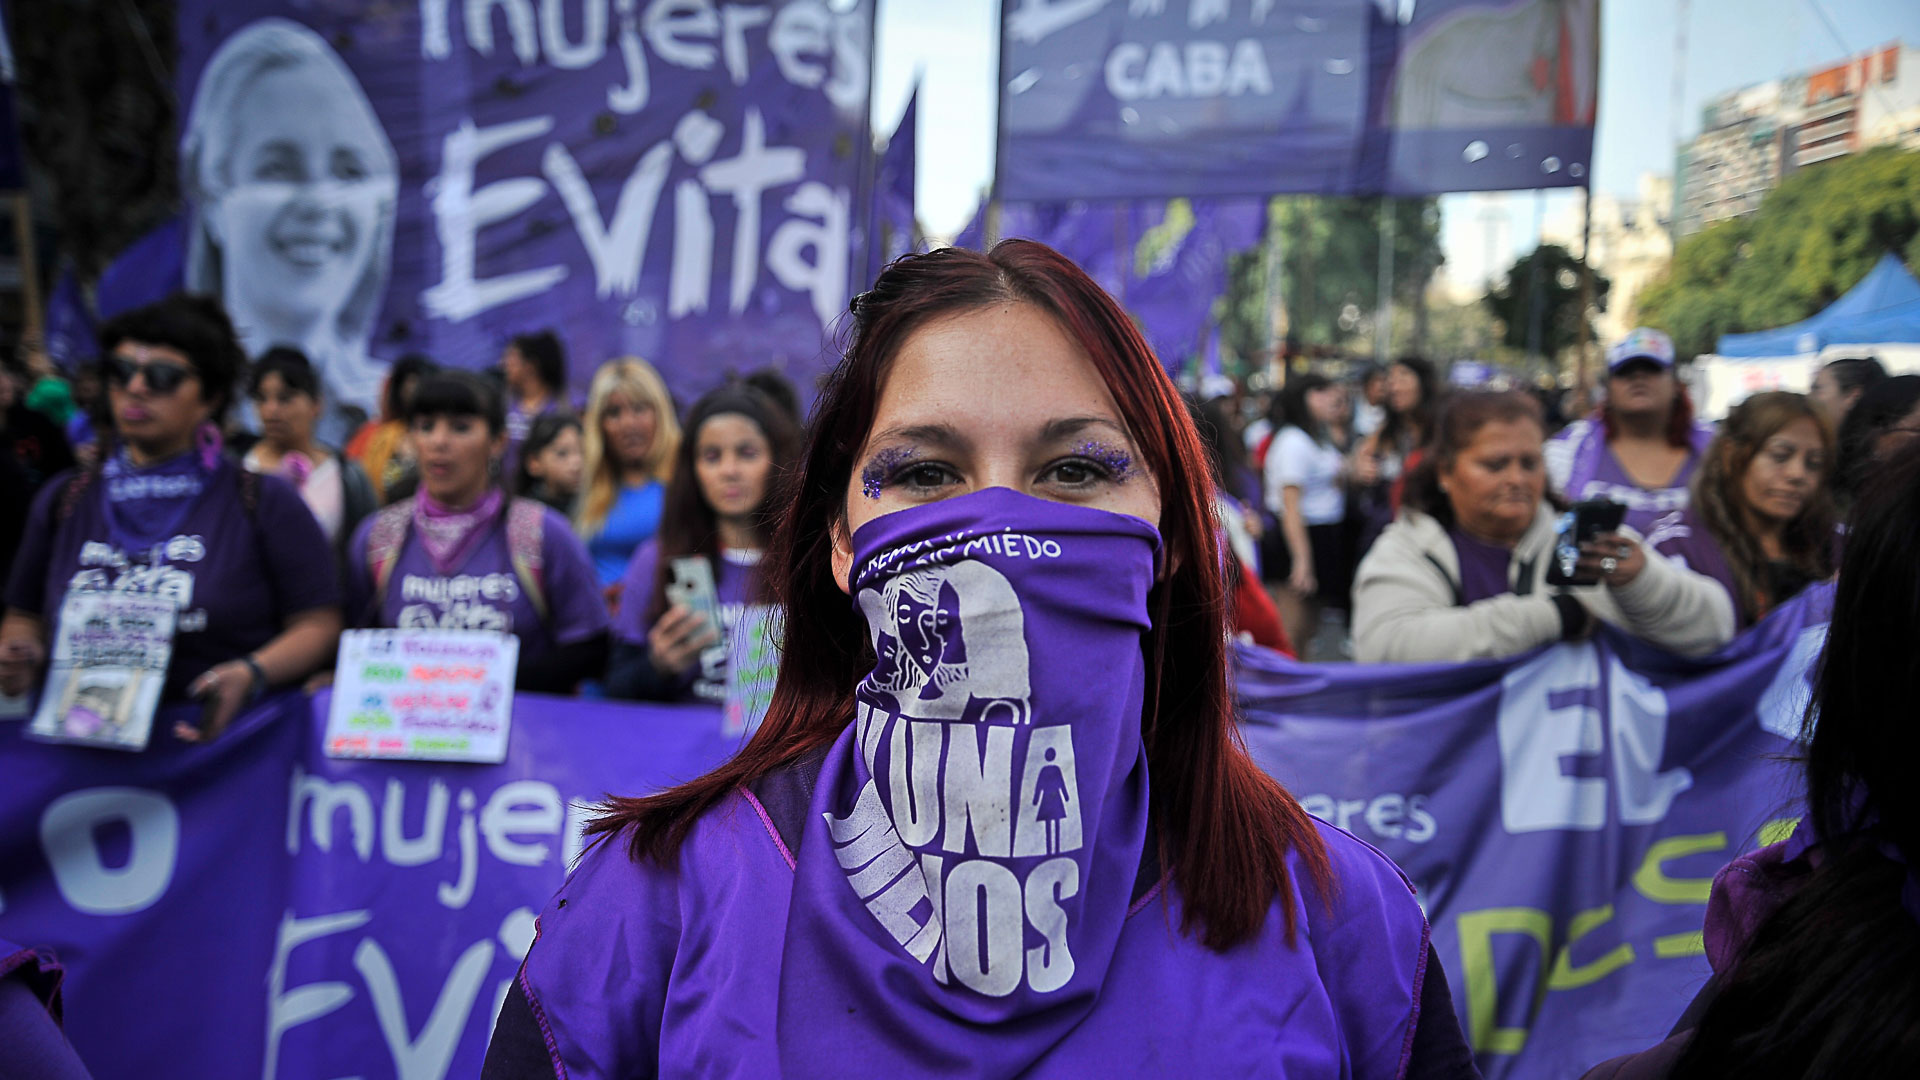 La octava marcha de #NiUnaMenos en fotos